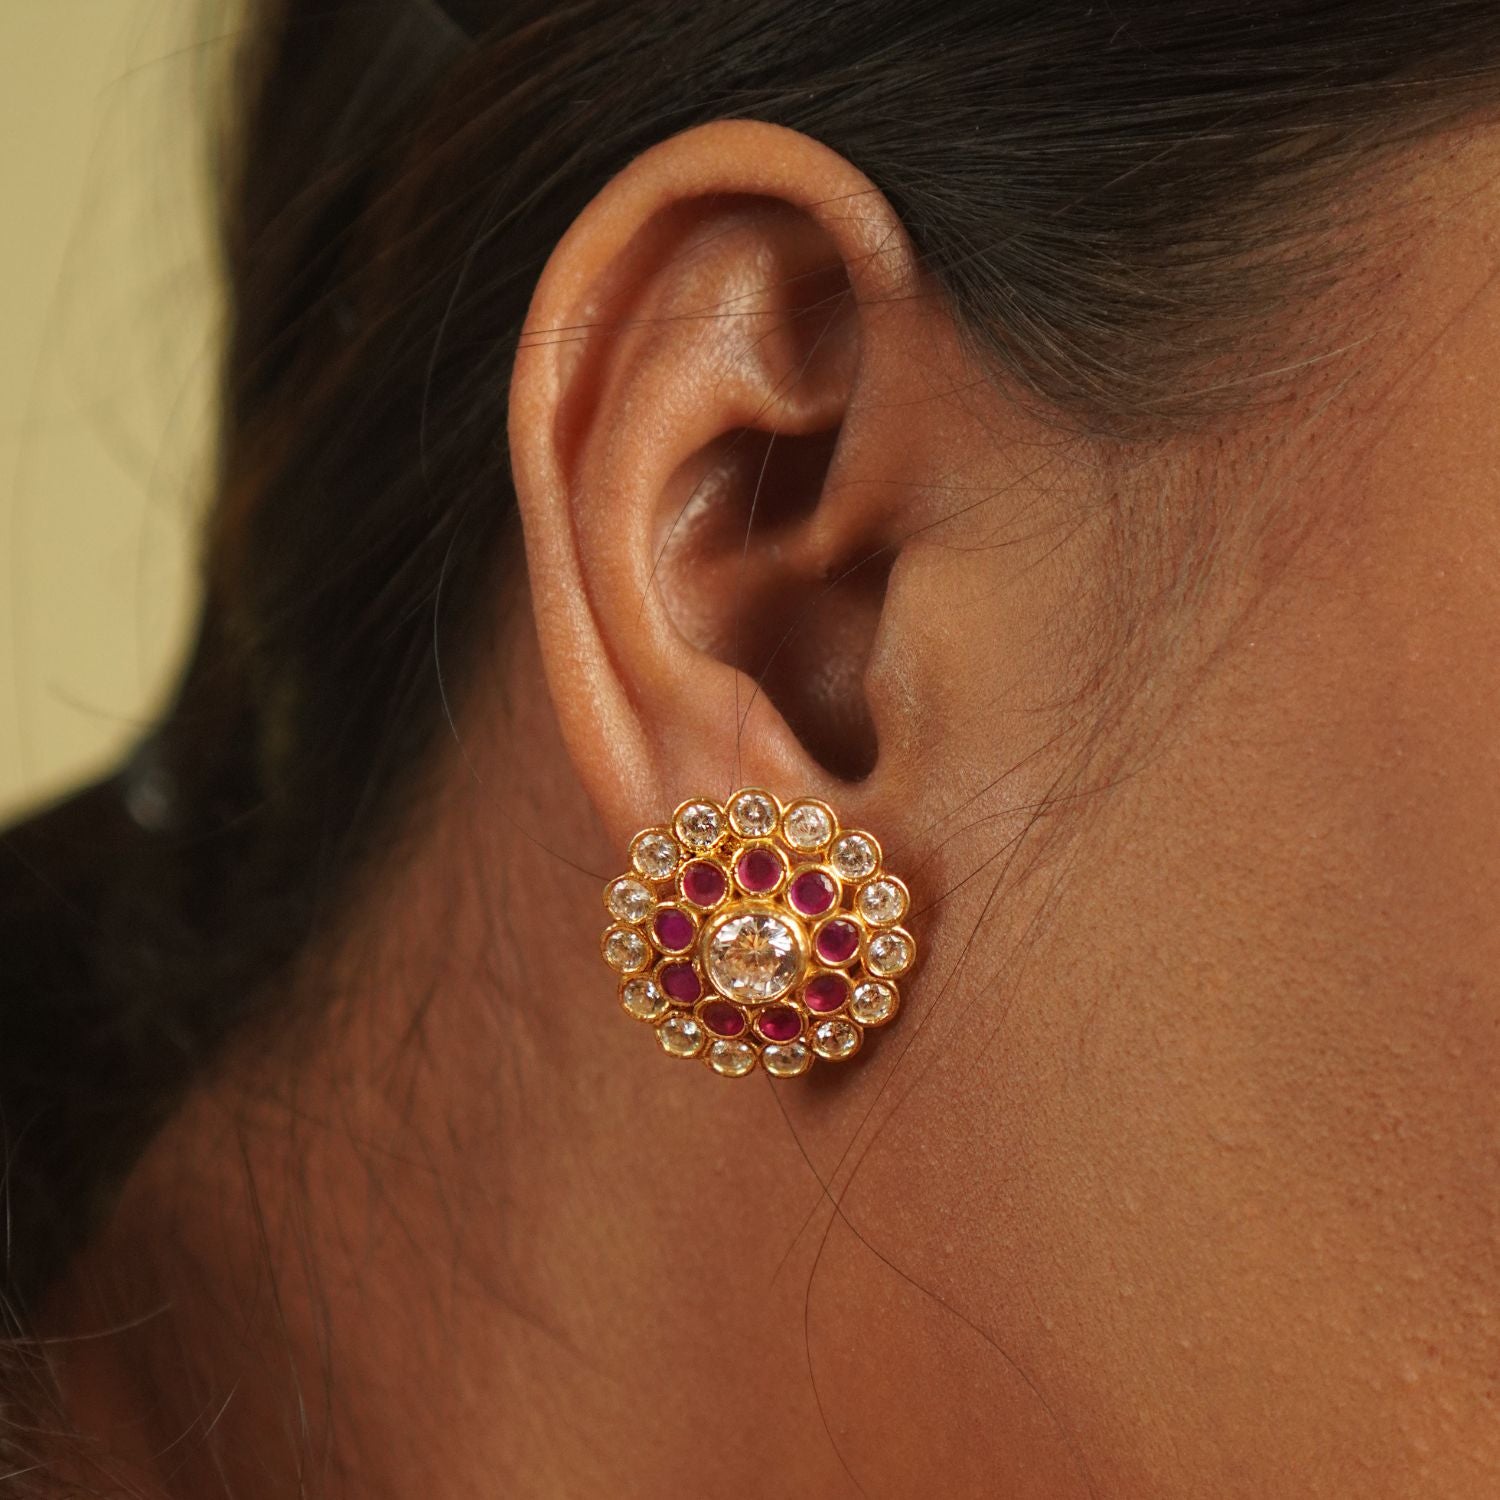 Akara earrings